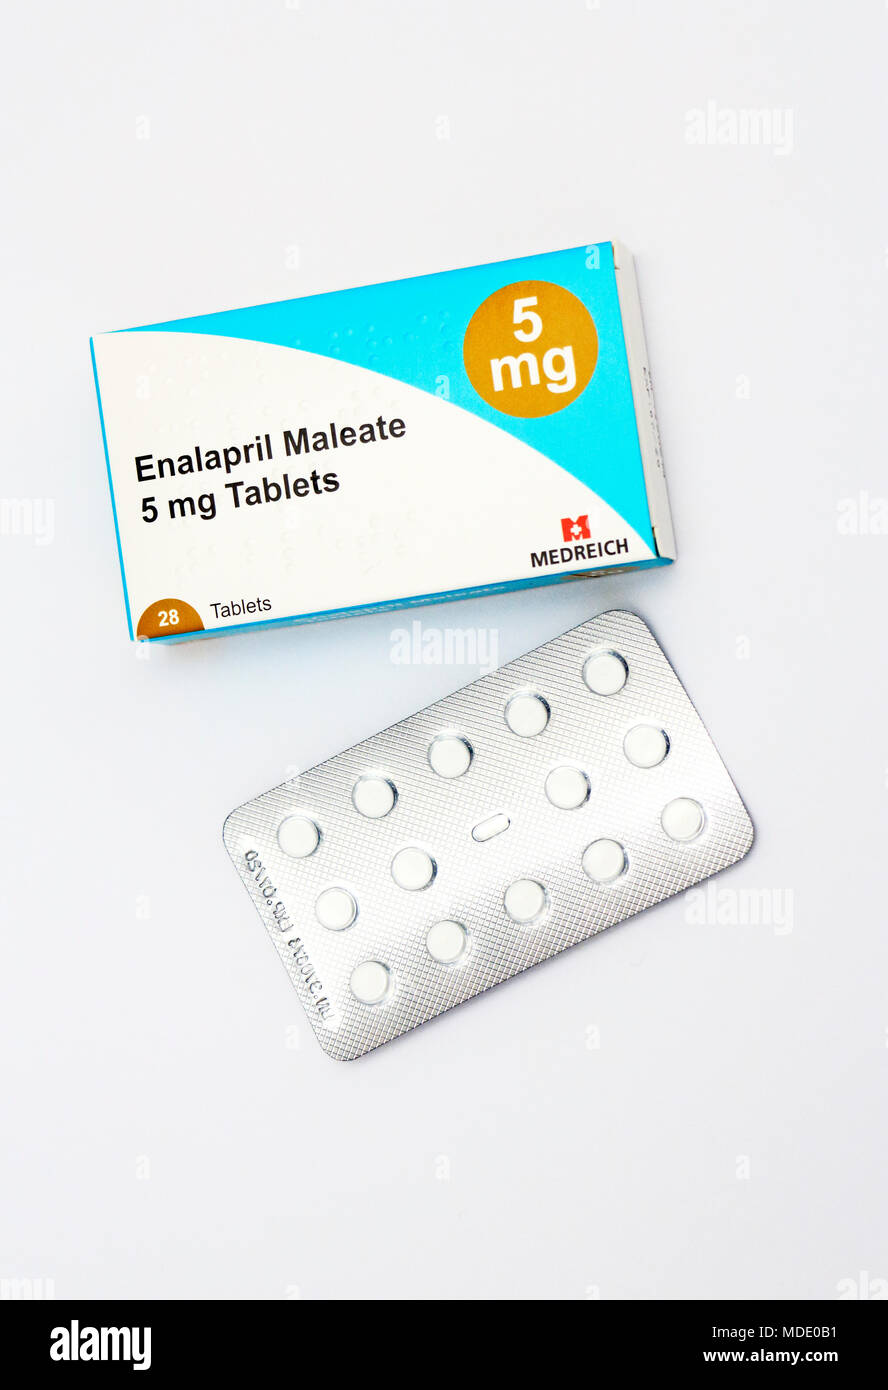 Eine Packung Enalapril Maleat 5 mg Tabletten für die Behandlung von  Bluthochdruck, Herzinsuffizienz und Zeichen der Herzinsuffizienz zu  verhindern Stockfotografie - Alamy